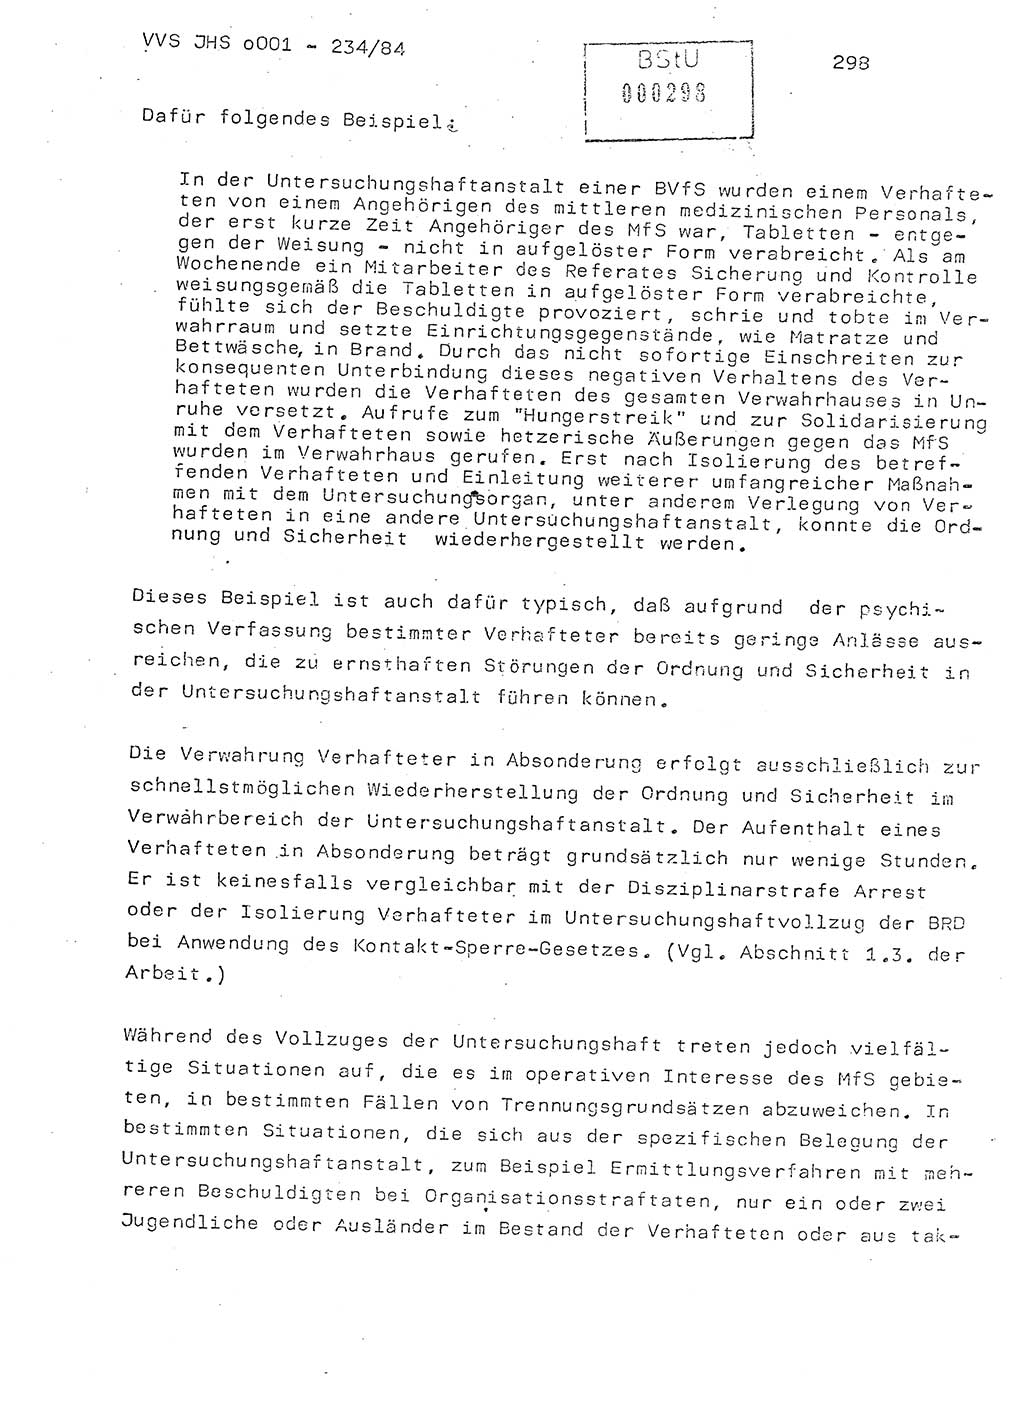 Dissertation Oberst Siegfried Rataizick (Abt. ⅩⅣ), Oberstleutnant Volkmar Heinz (Abt. ⅩⅣ), Oberstleutnant Werner Stein (HA Ⅸ), Hauptmann Heinz Conrad (JHS), Ministerium für Staatssicherheit (MfS) [Deutsche Demokratische Republik (DDR)], Juristische Hochschule (JHS), Vertrauliche Verschlußsache (VVS) o001-234/84, Potsdam 1984, Seite 298 (Diss. MfS DDR JHS VVS o001-234/84 1984, S. 298)